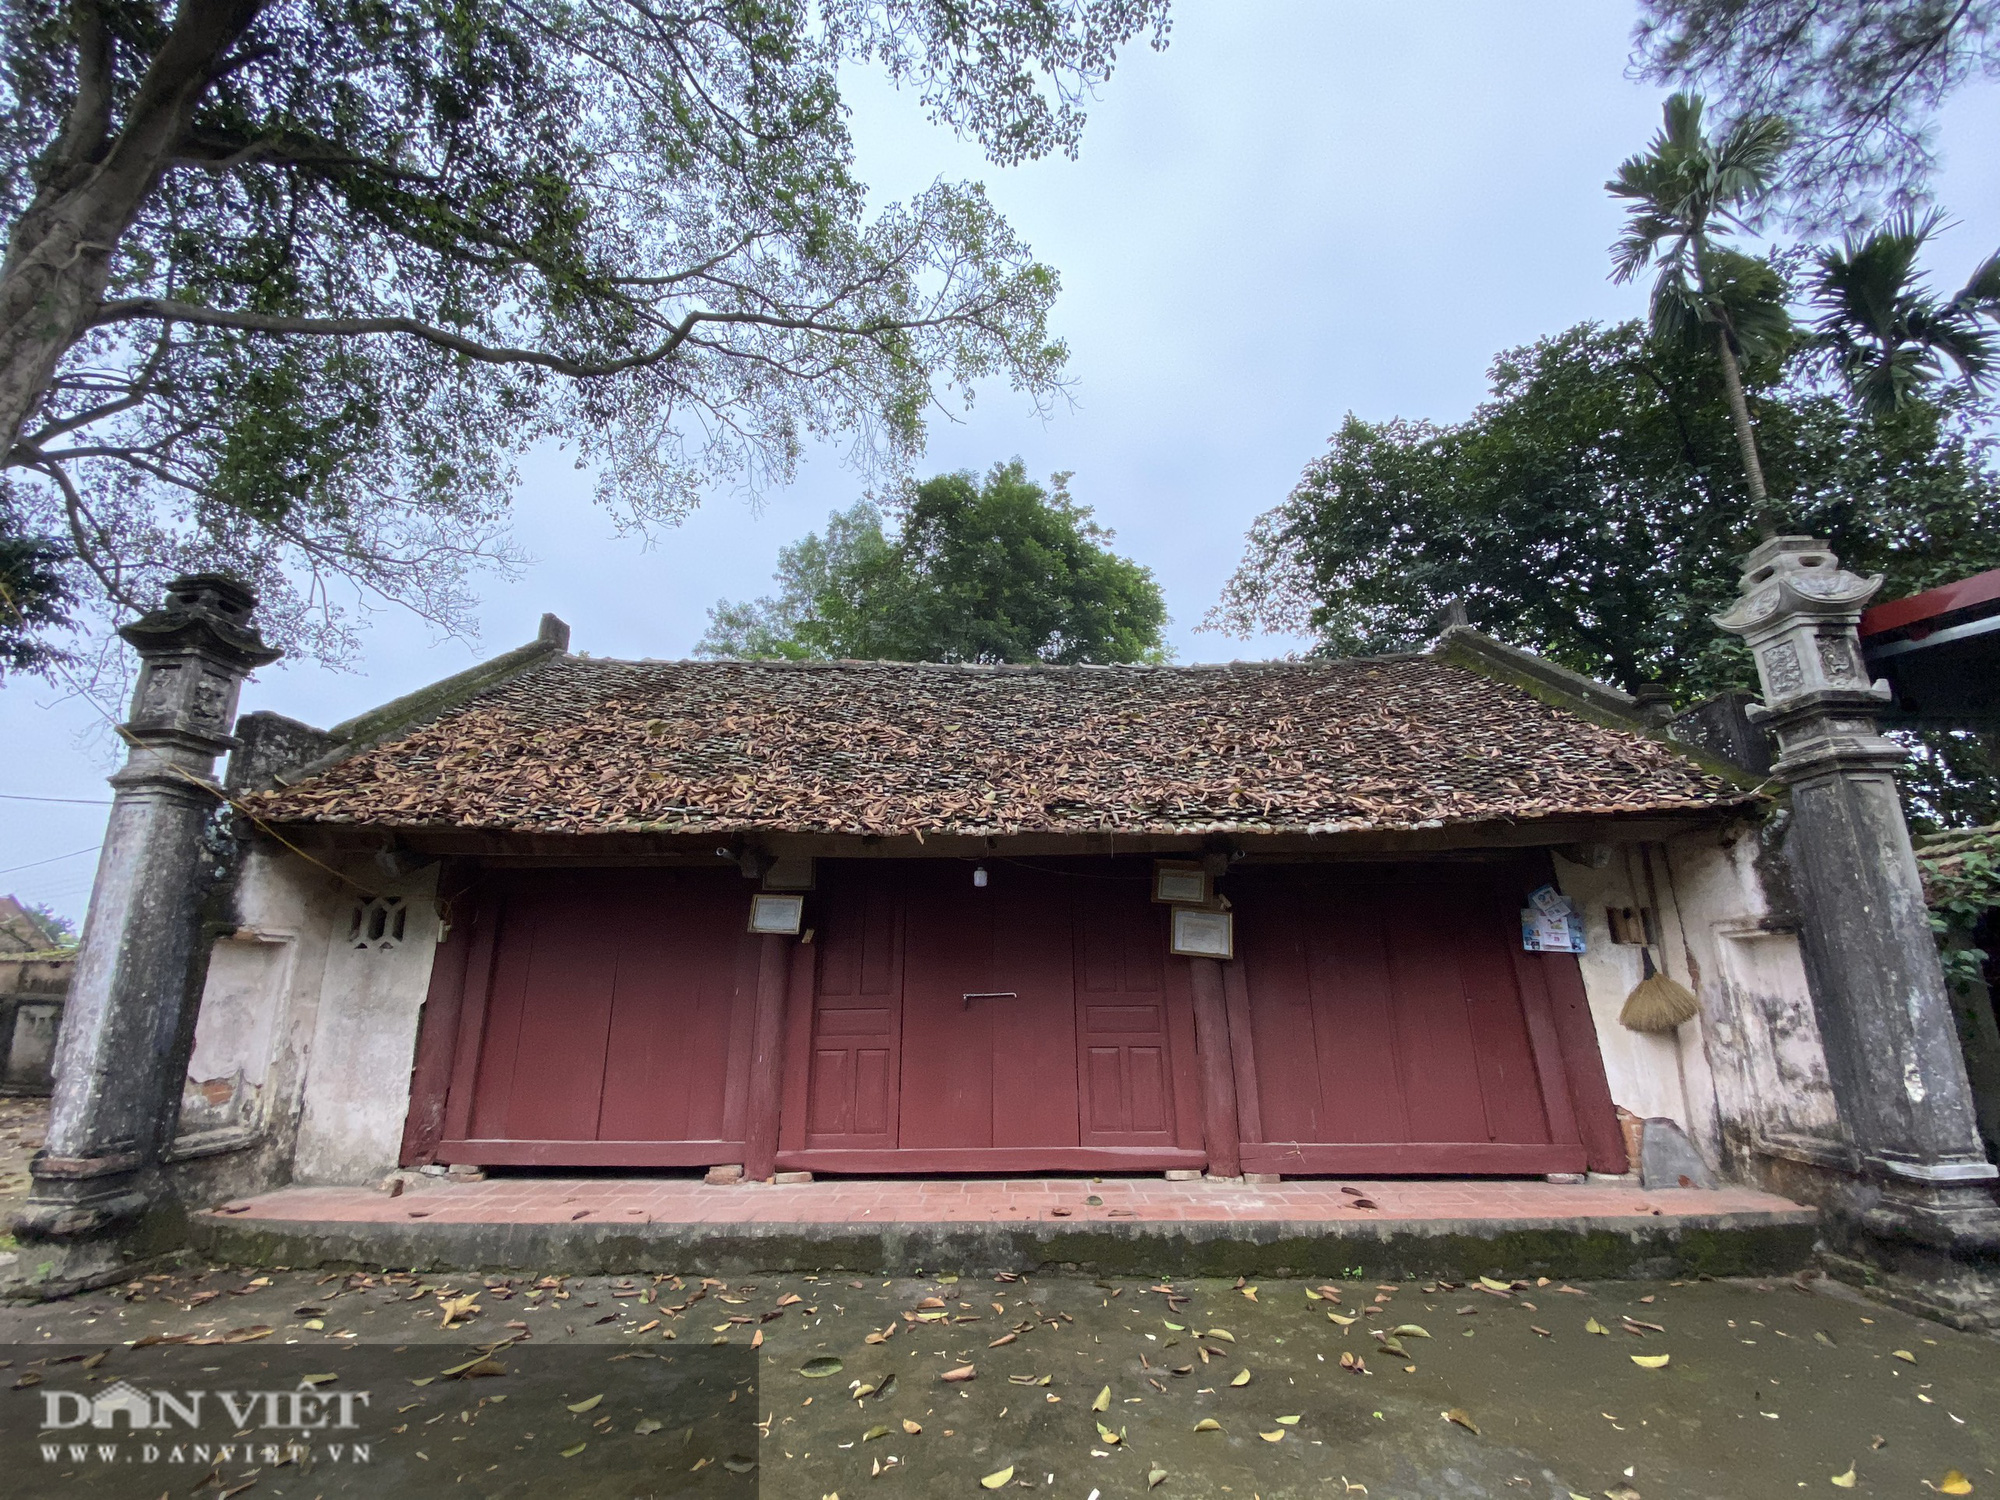 Đình làng Phương Độ: Ngôi đình hơn 500 năm tuổi – nơi lưu giữ nhiều dấu tích cổ - Ảnh 8.